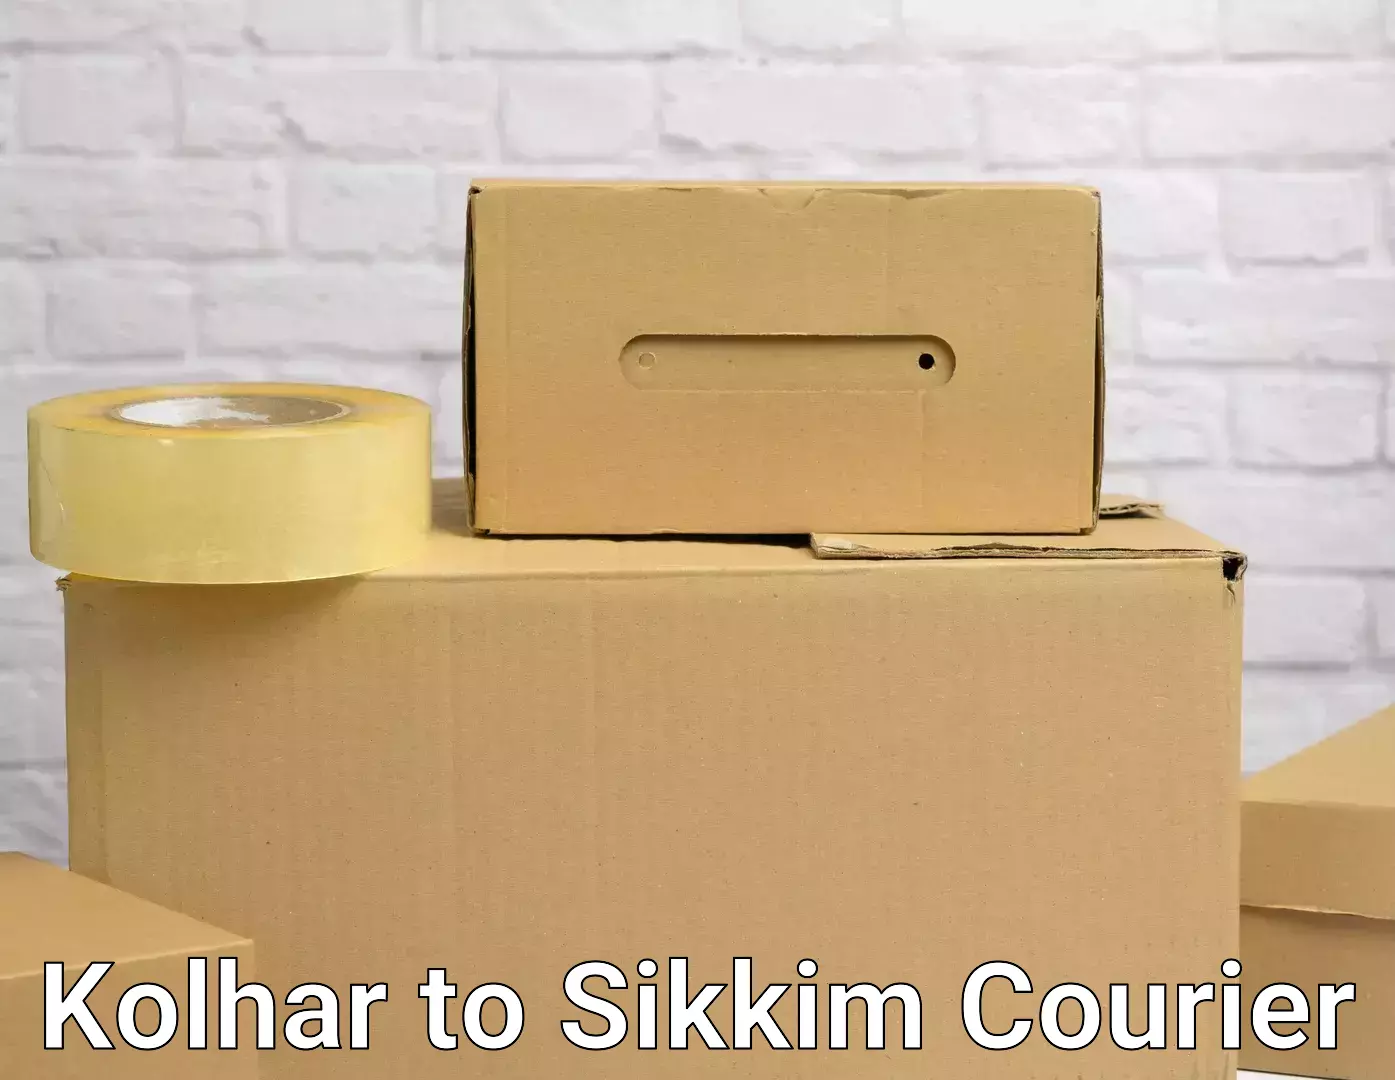 Furniture transport service Kolhar to East Sikkim